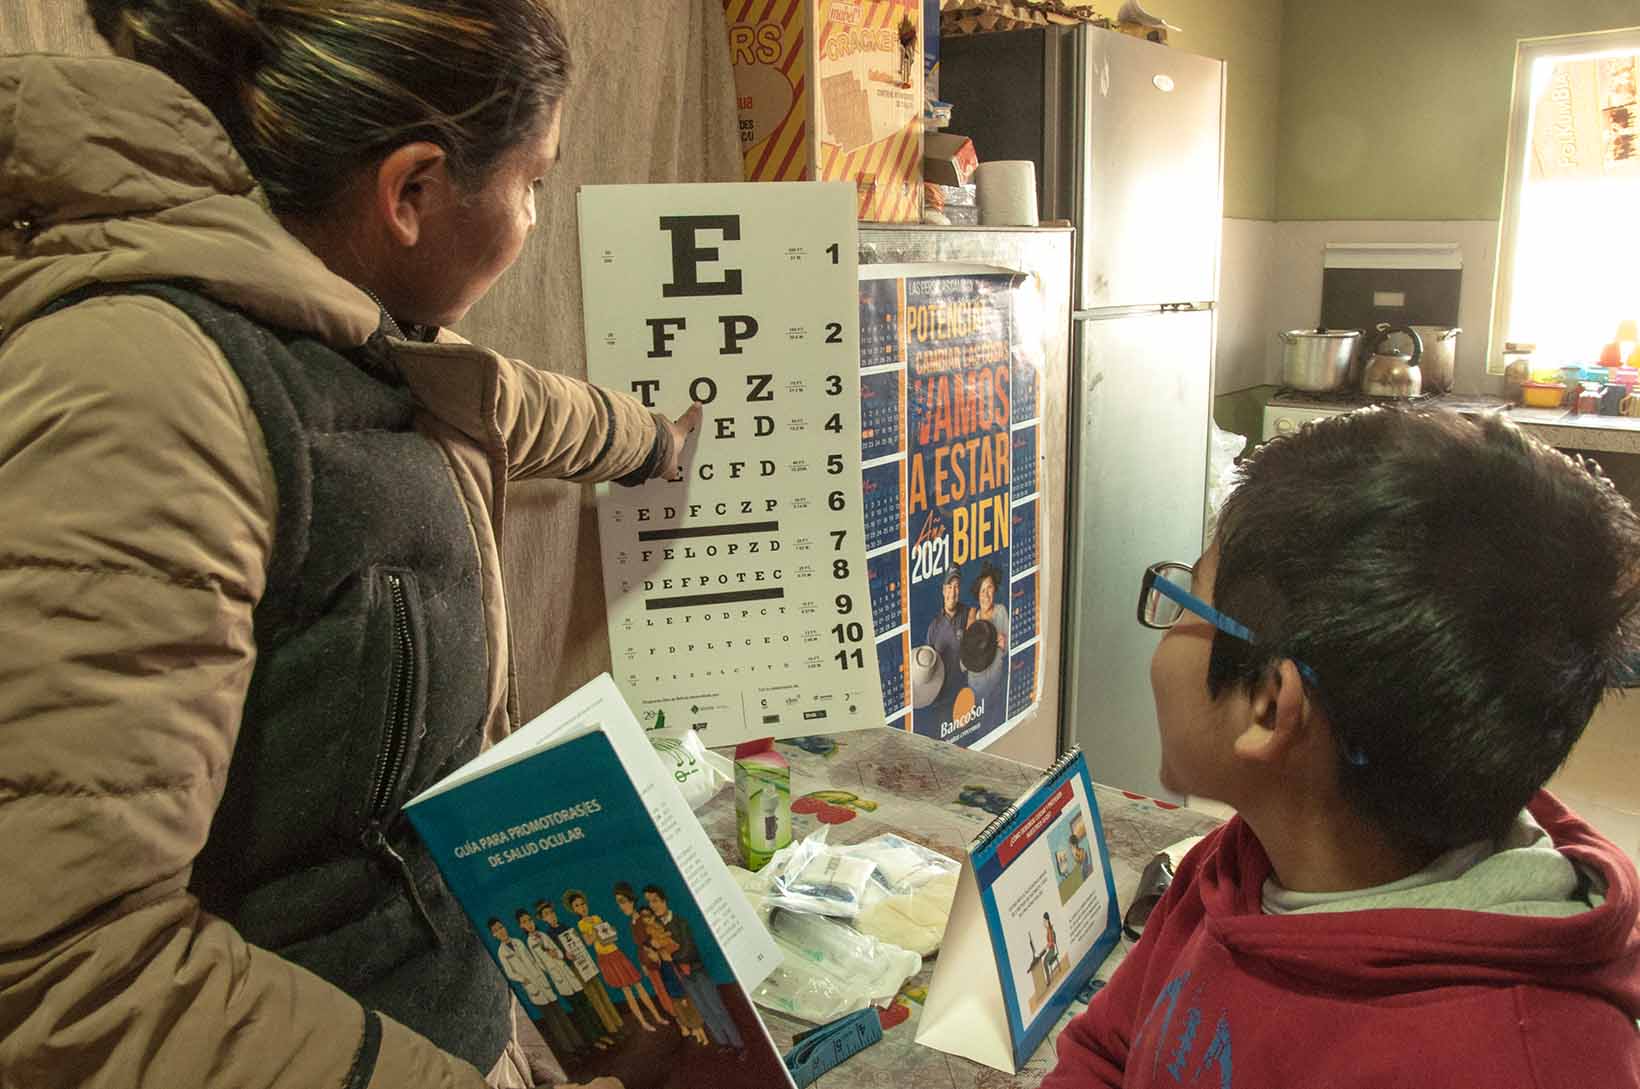 Eine Frau aus Bolivien zeigt mit einer Hand auf eine Sehtesttafel. Ein Junge mit Brille blickt hin. Mit der anderen Hand hält sie eine Infobroschüre. 